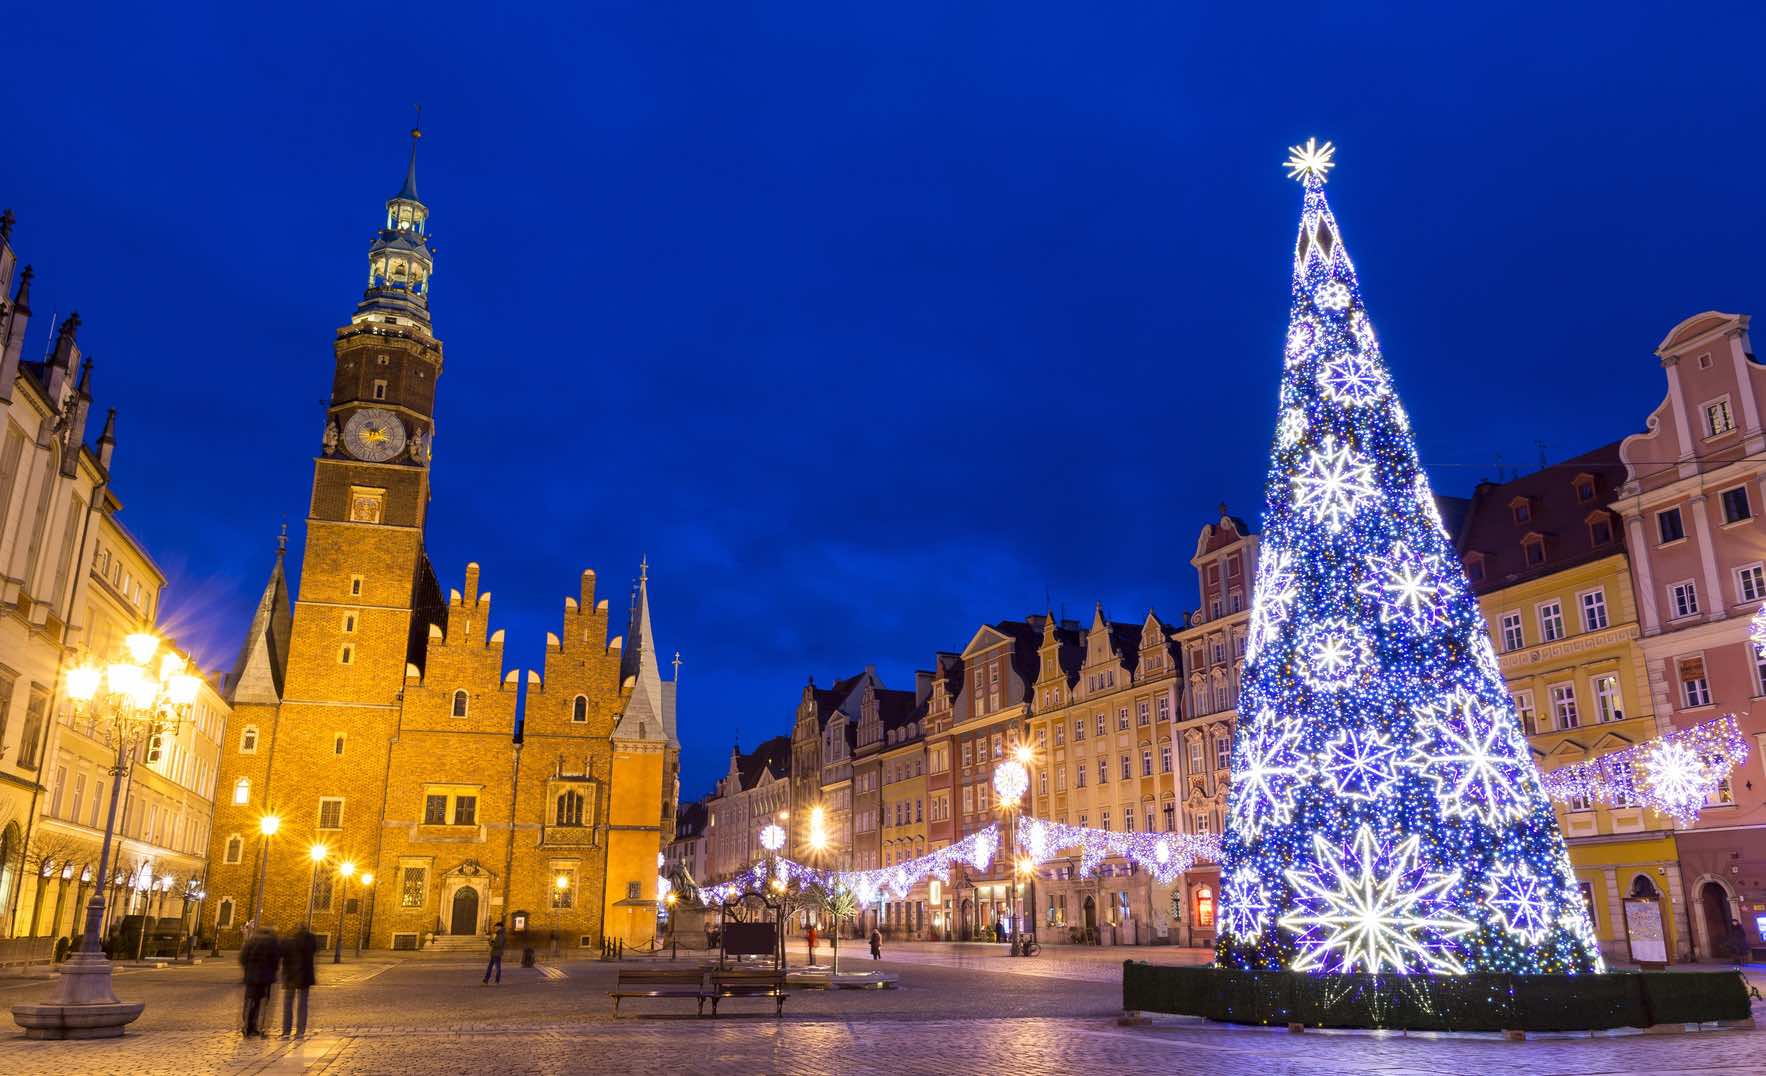 Da Quando Si Festeggia Il Natale.Il Natale In Polonia Come Si Festeggia Il Natale A Breslavia